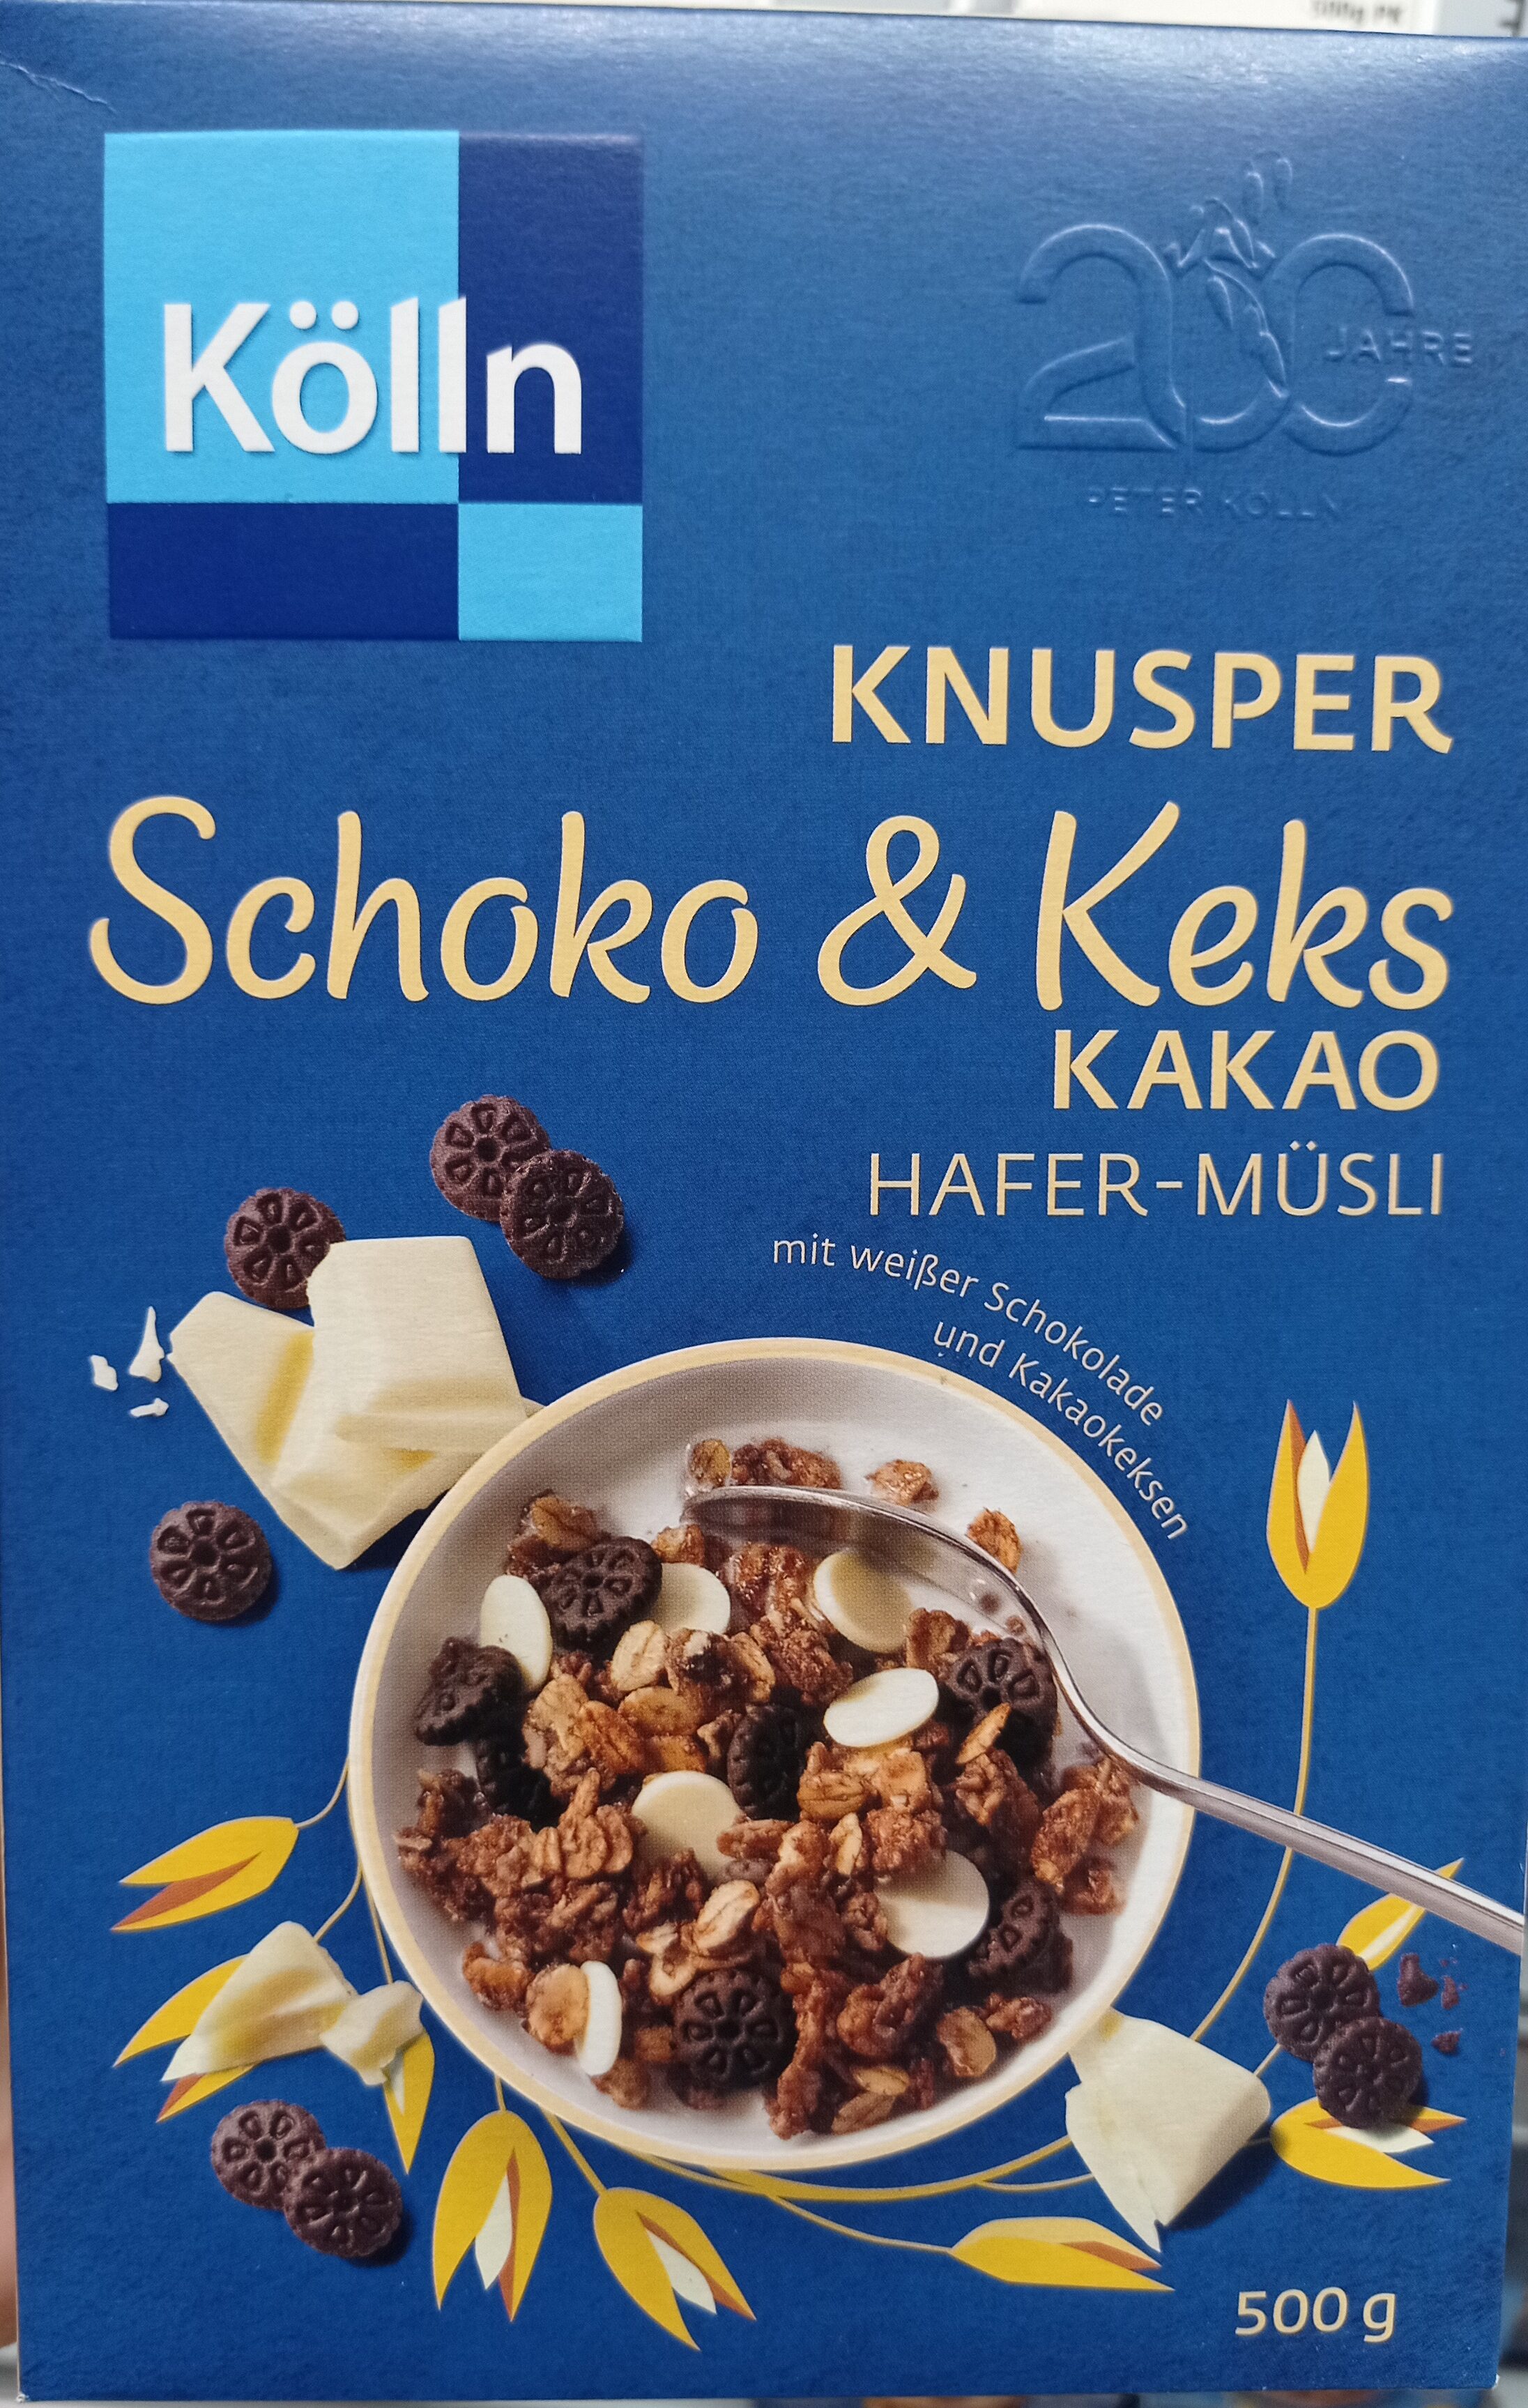 Knusper Schoko & Keks Kakao Hafer-Müsli - Producto - de